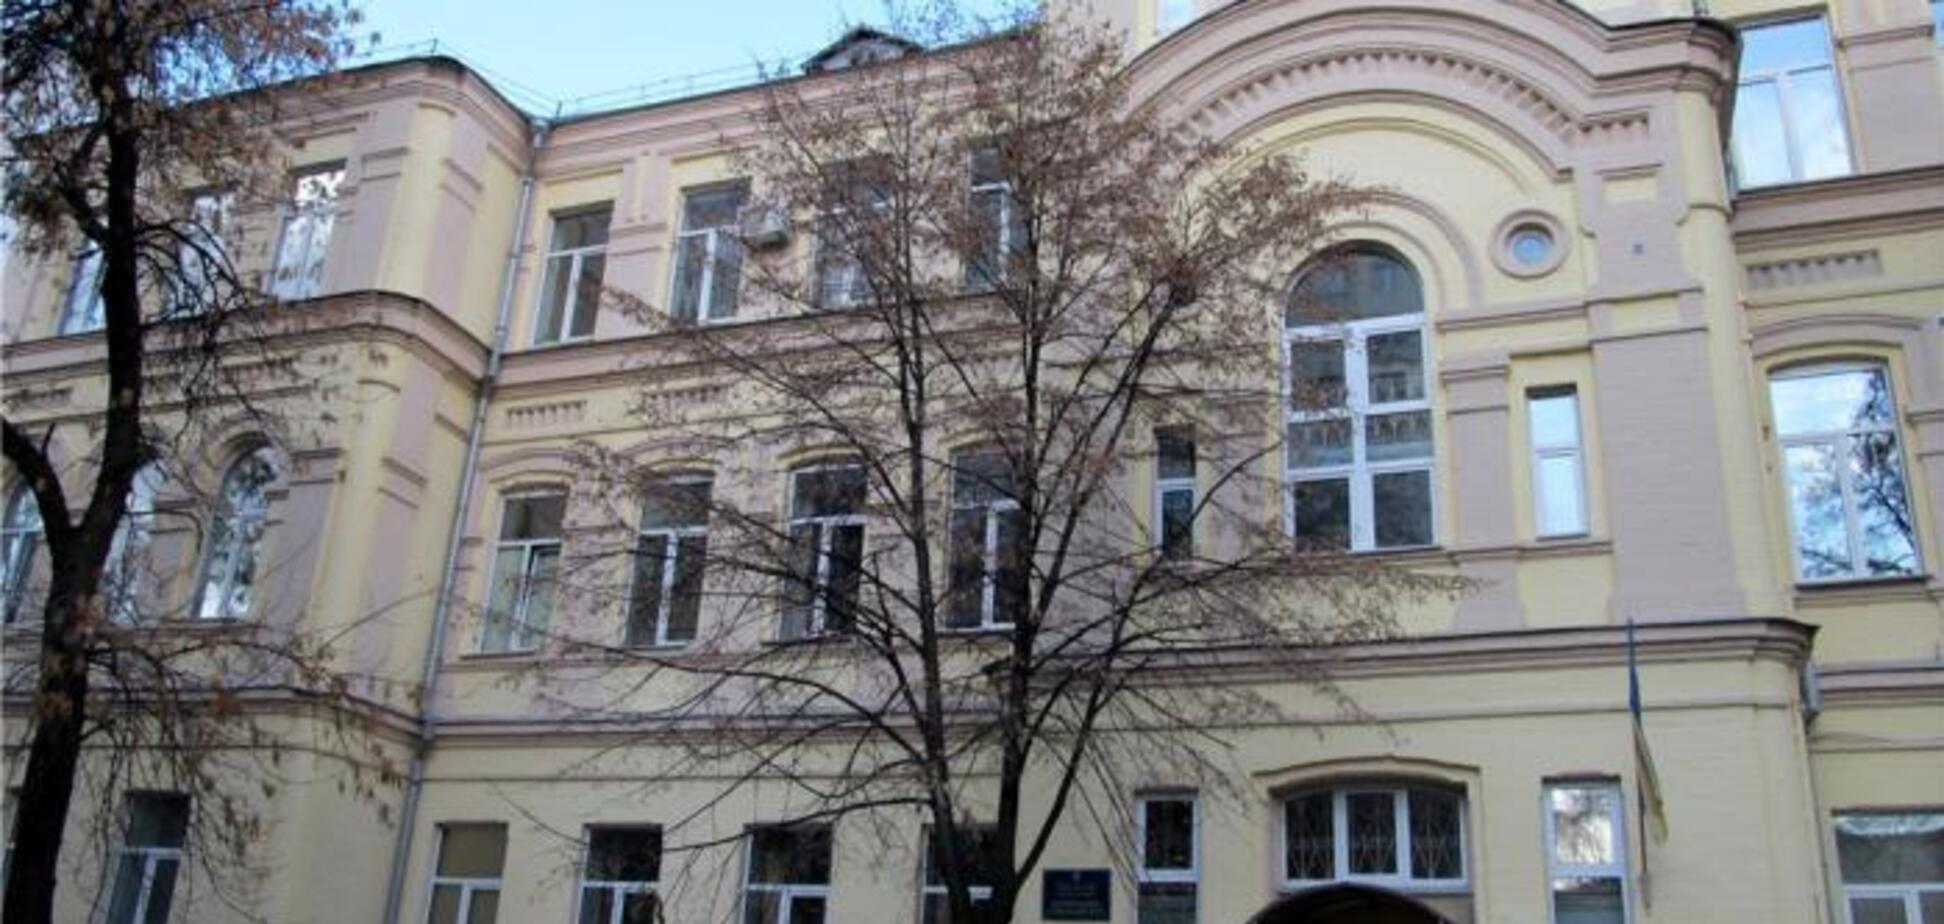 Директор и завуч взяли в 'заложники' гимназию в Киеве: подробности скандала